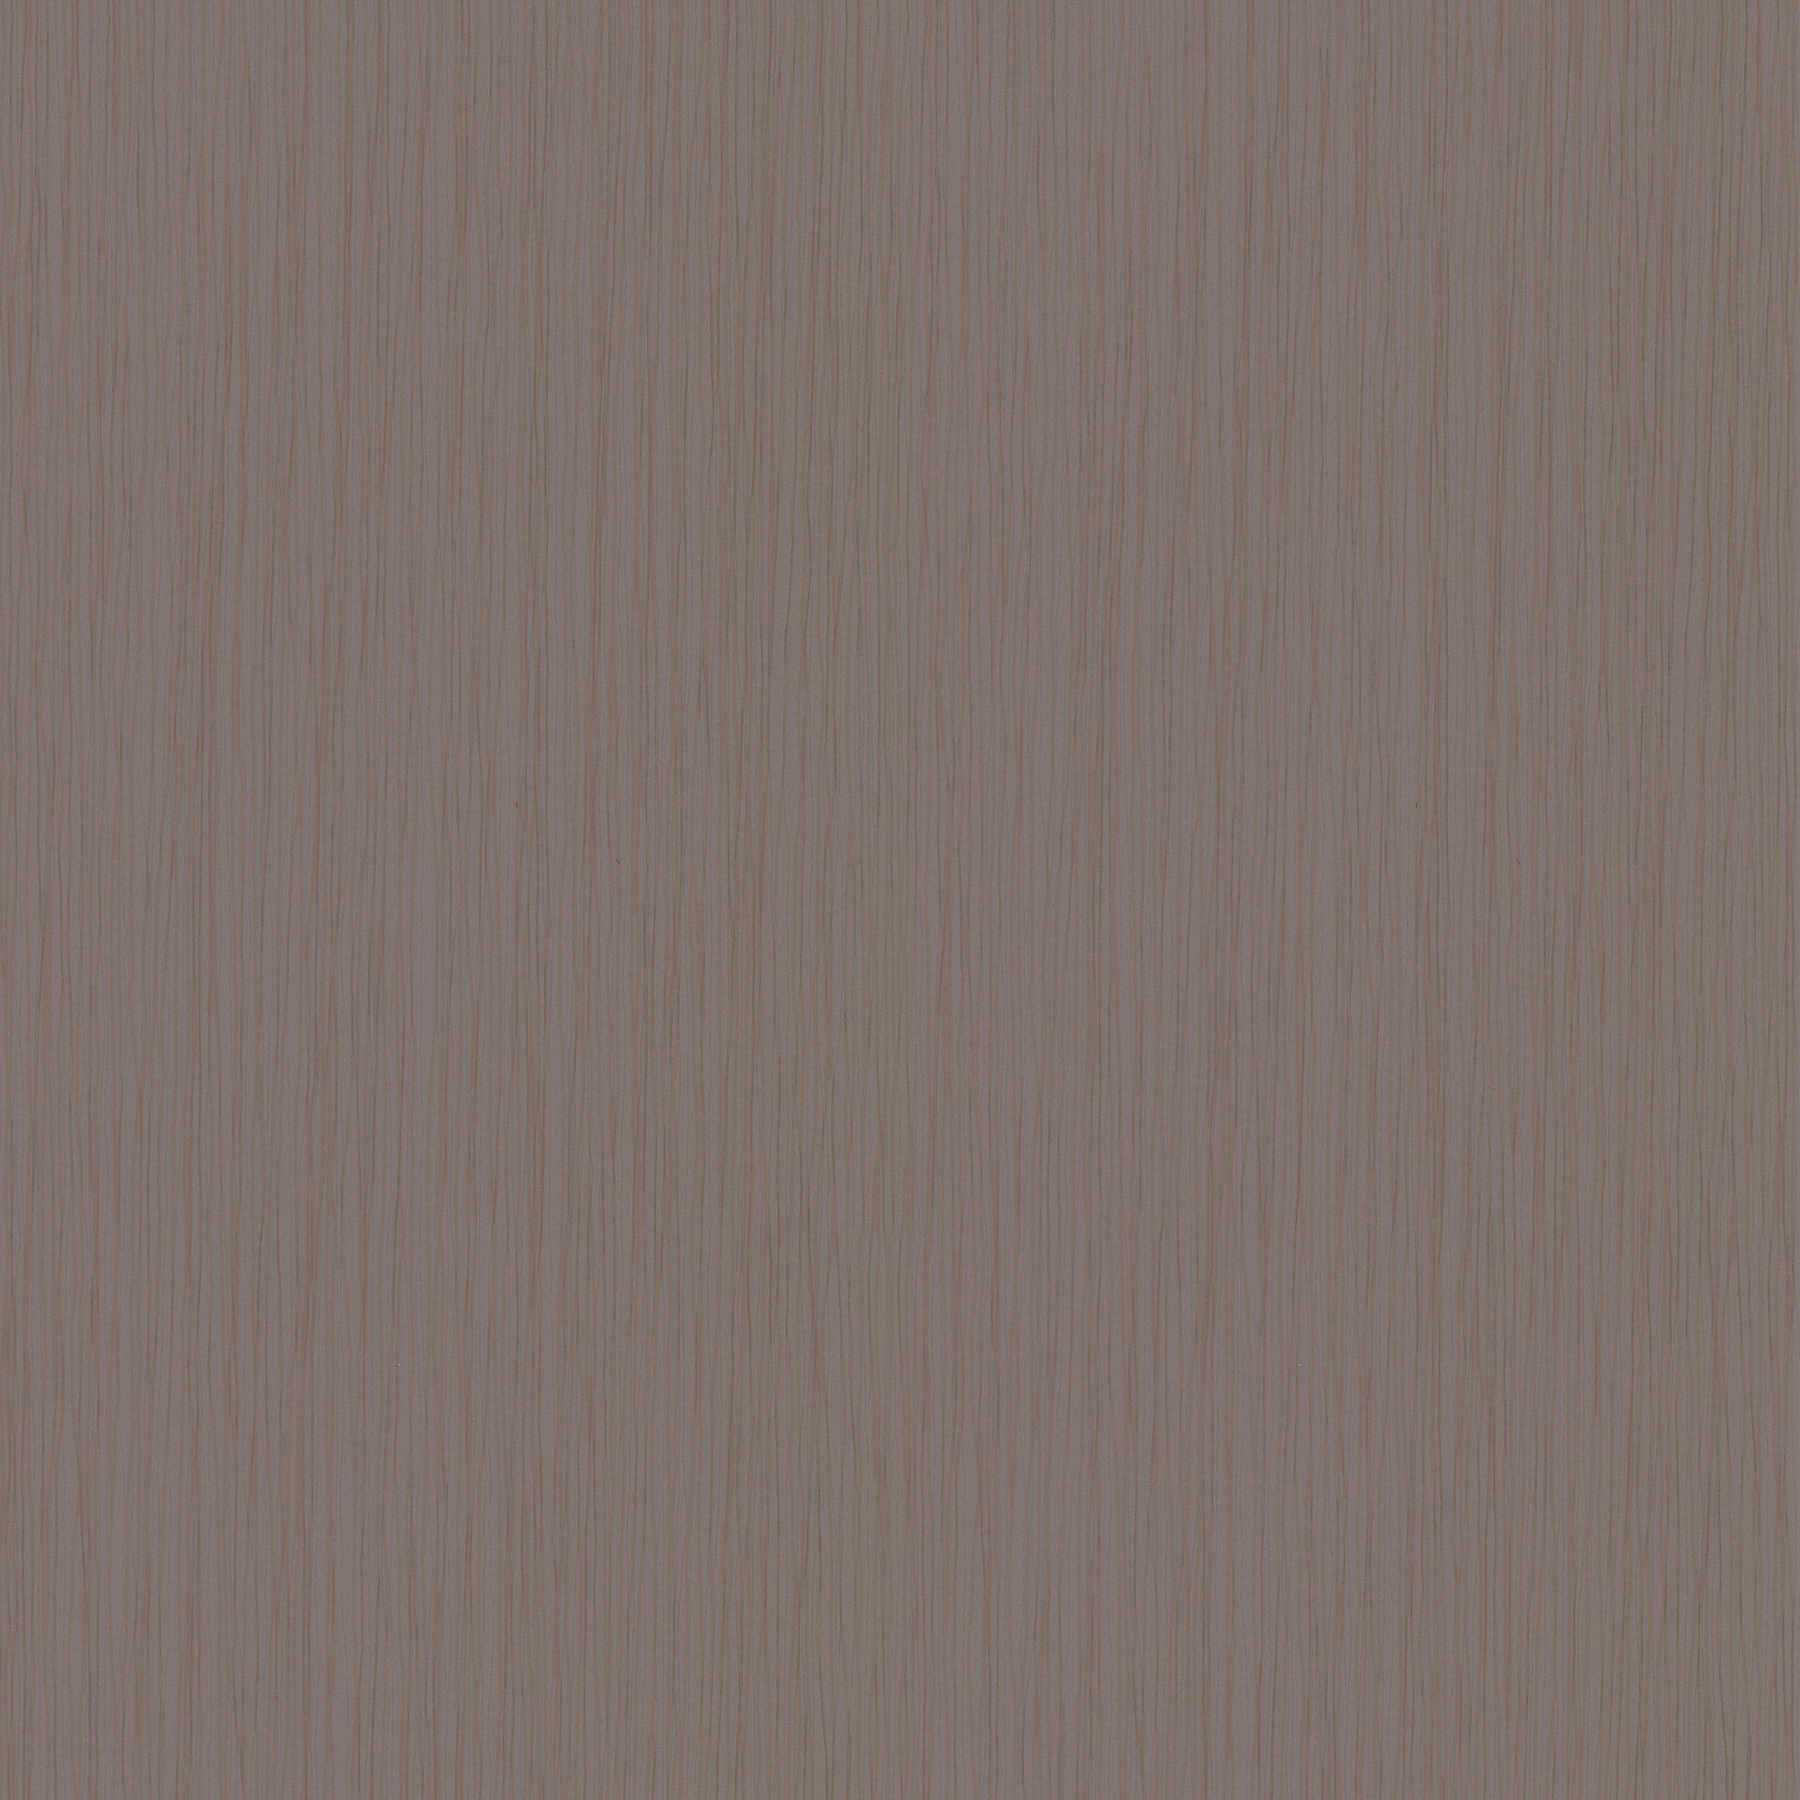 DANIEL HECHTER non-woven wallpaper brown mottled, plain & matt
